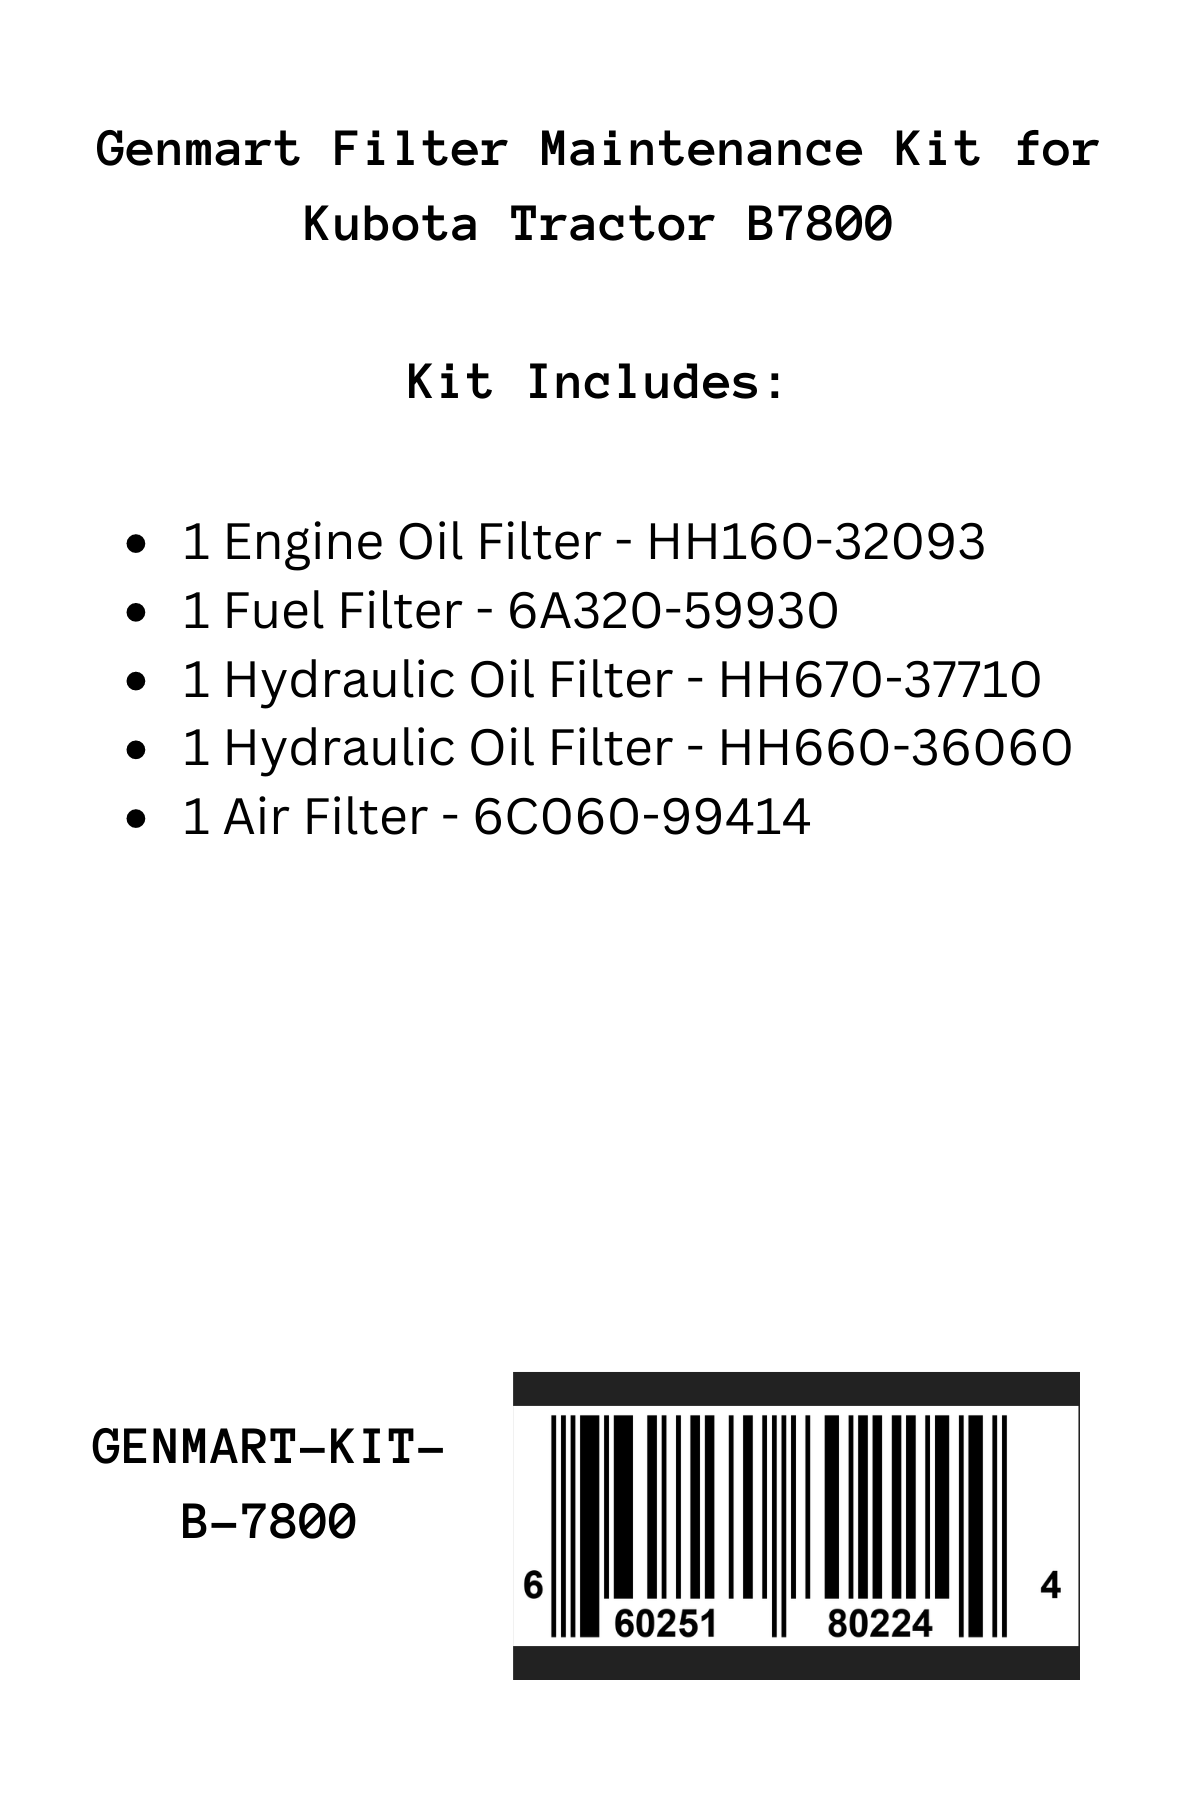 Genmart Maintenance Kit for Kubota Tractor B7800